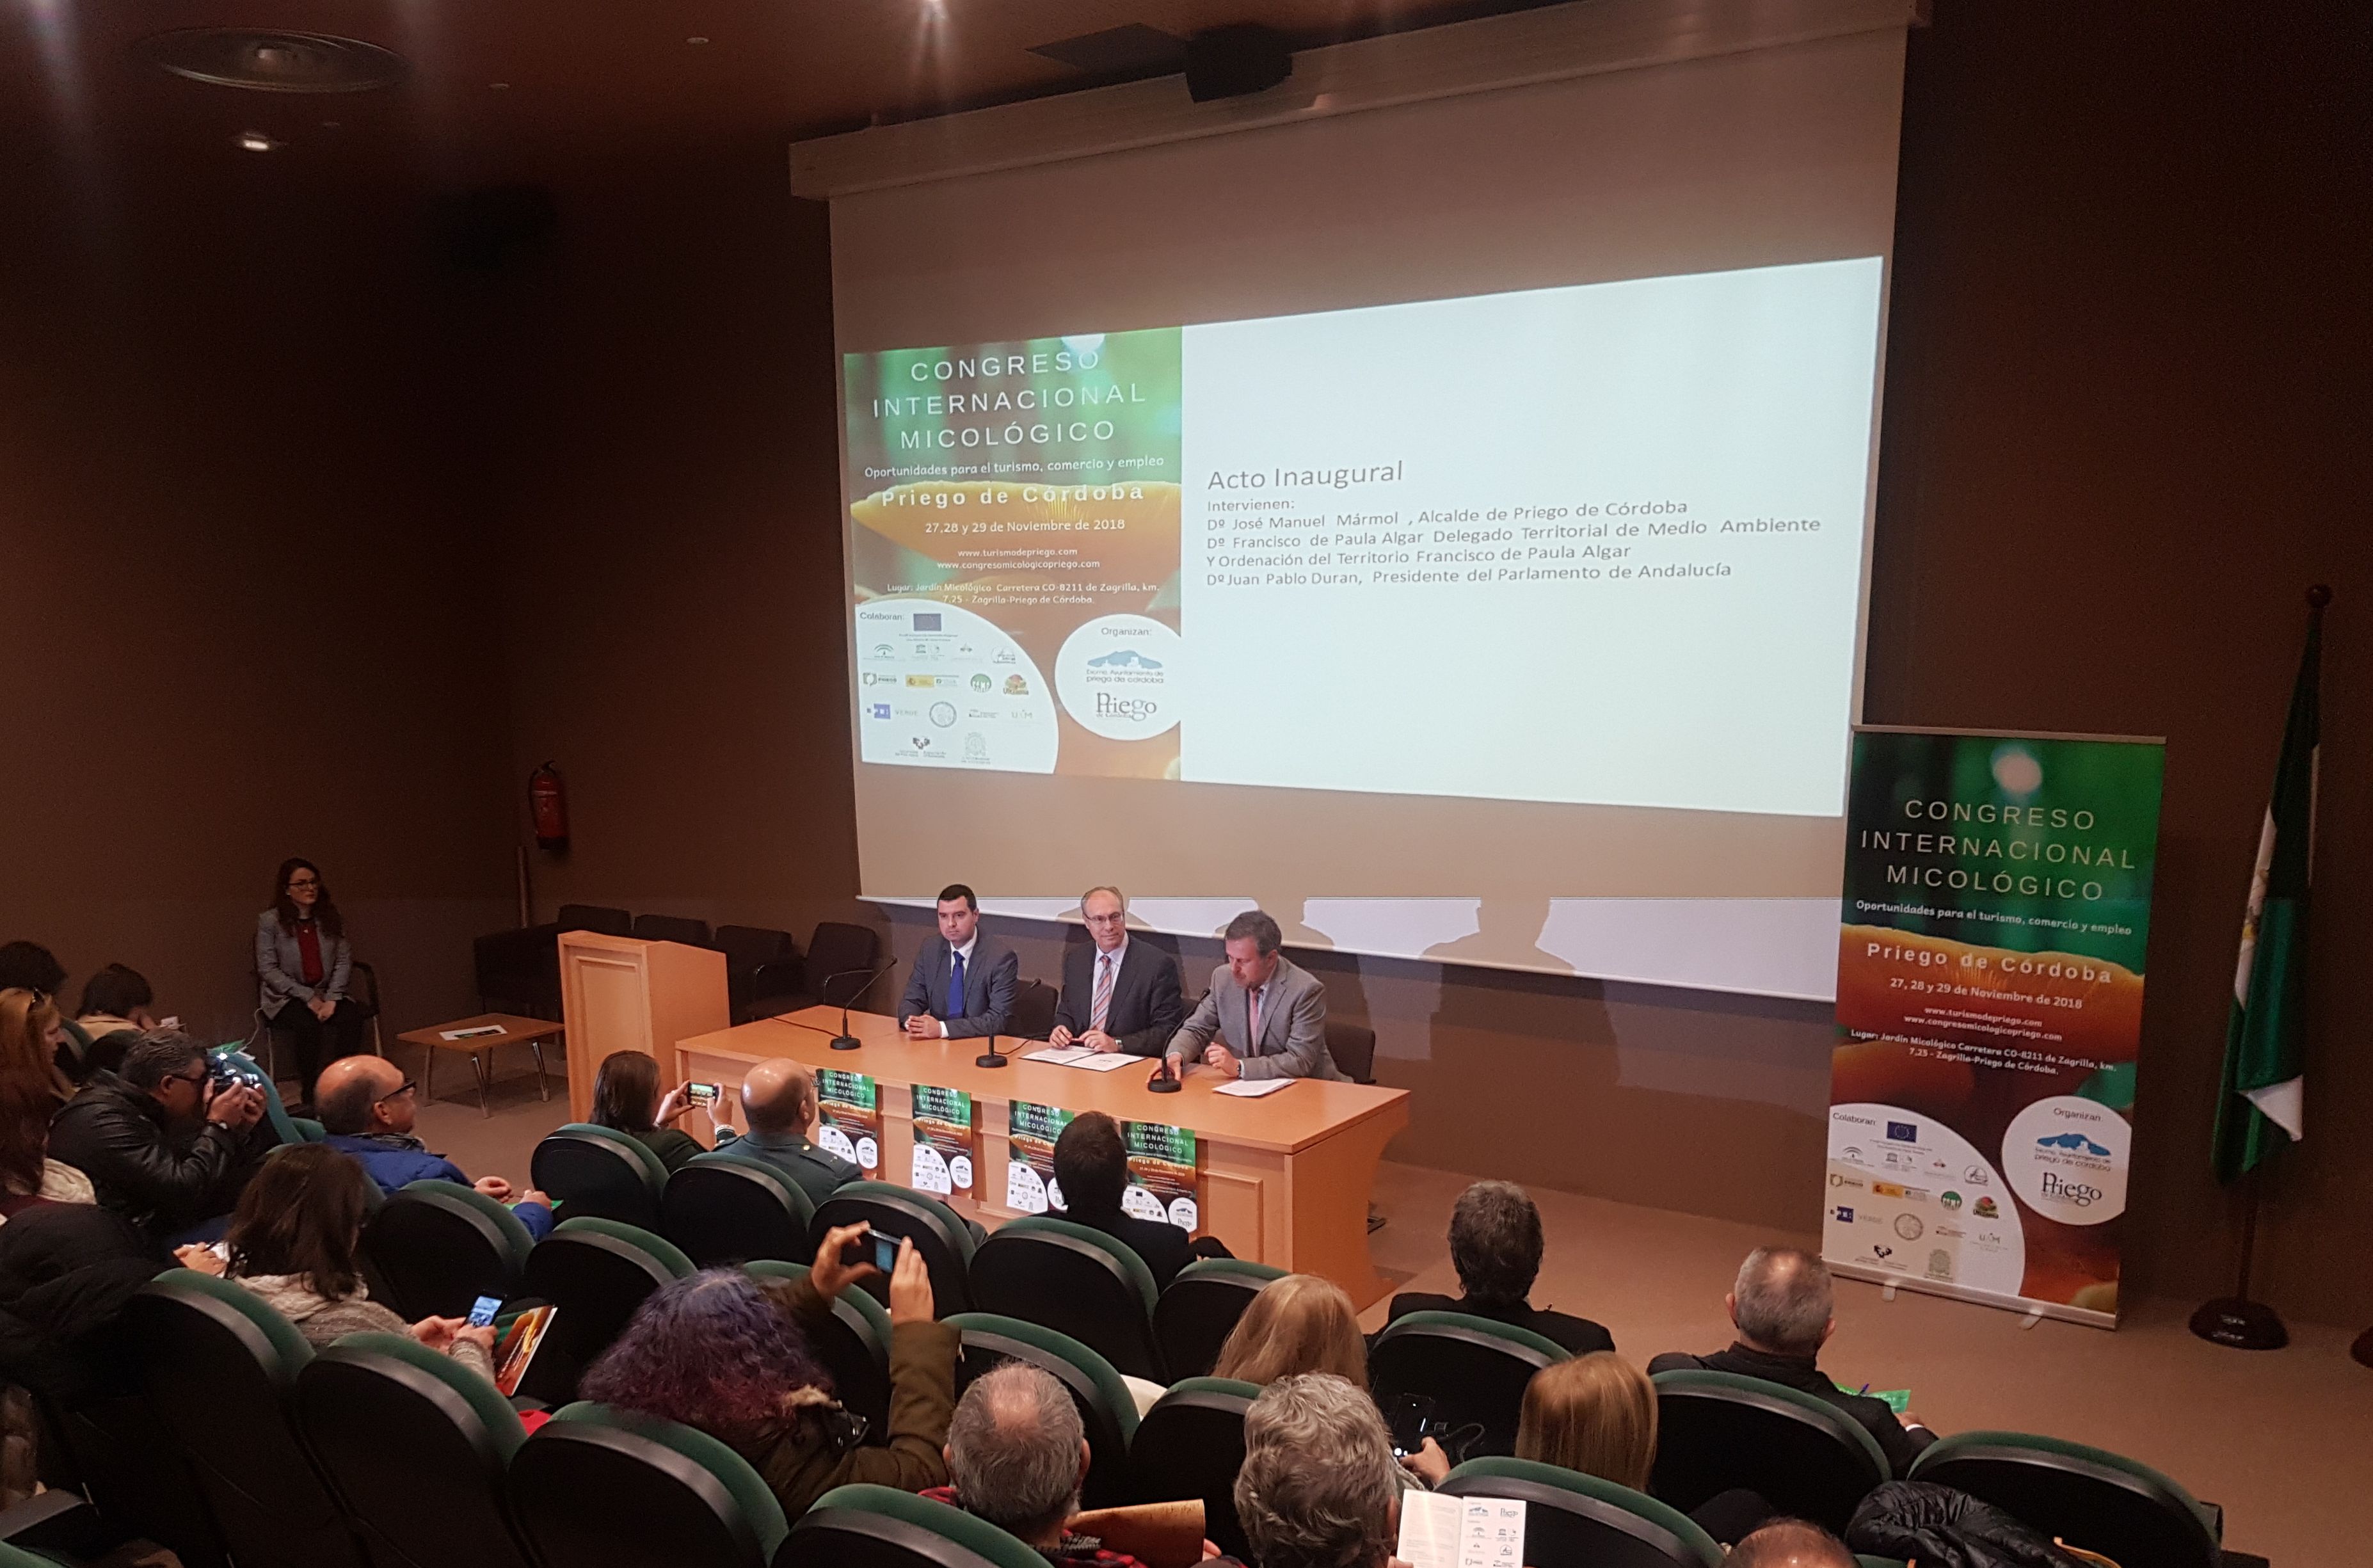 El presidente del Parlamento de Andaluca, Juan Pablo Durn, inaugura el Congreso Internacional Micolgico